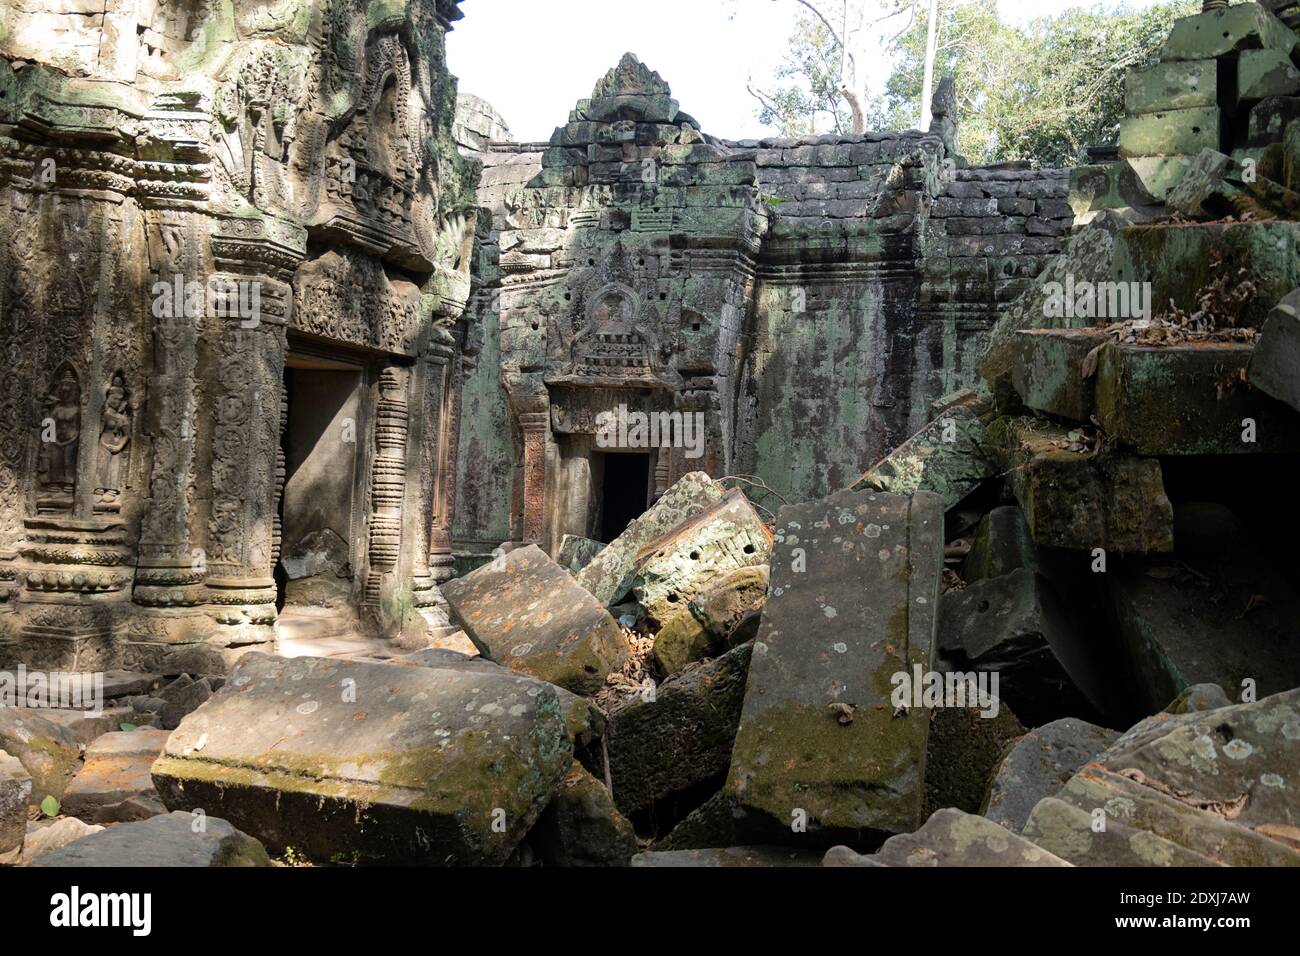 Collapsed wall at Angkor Wat Stock Photo